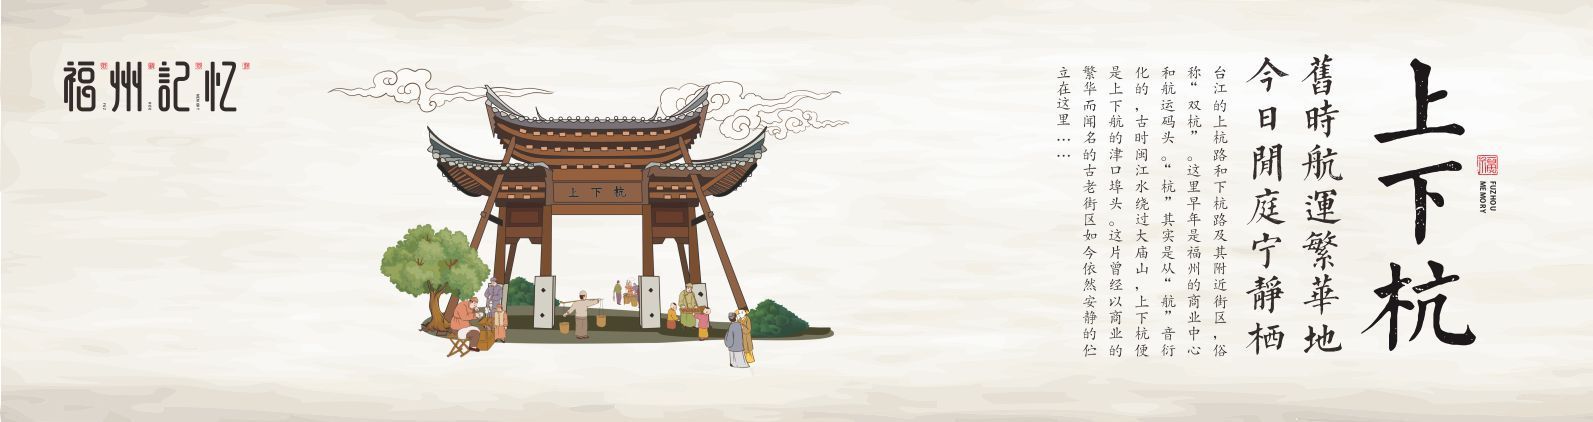 福州风景插画图片